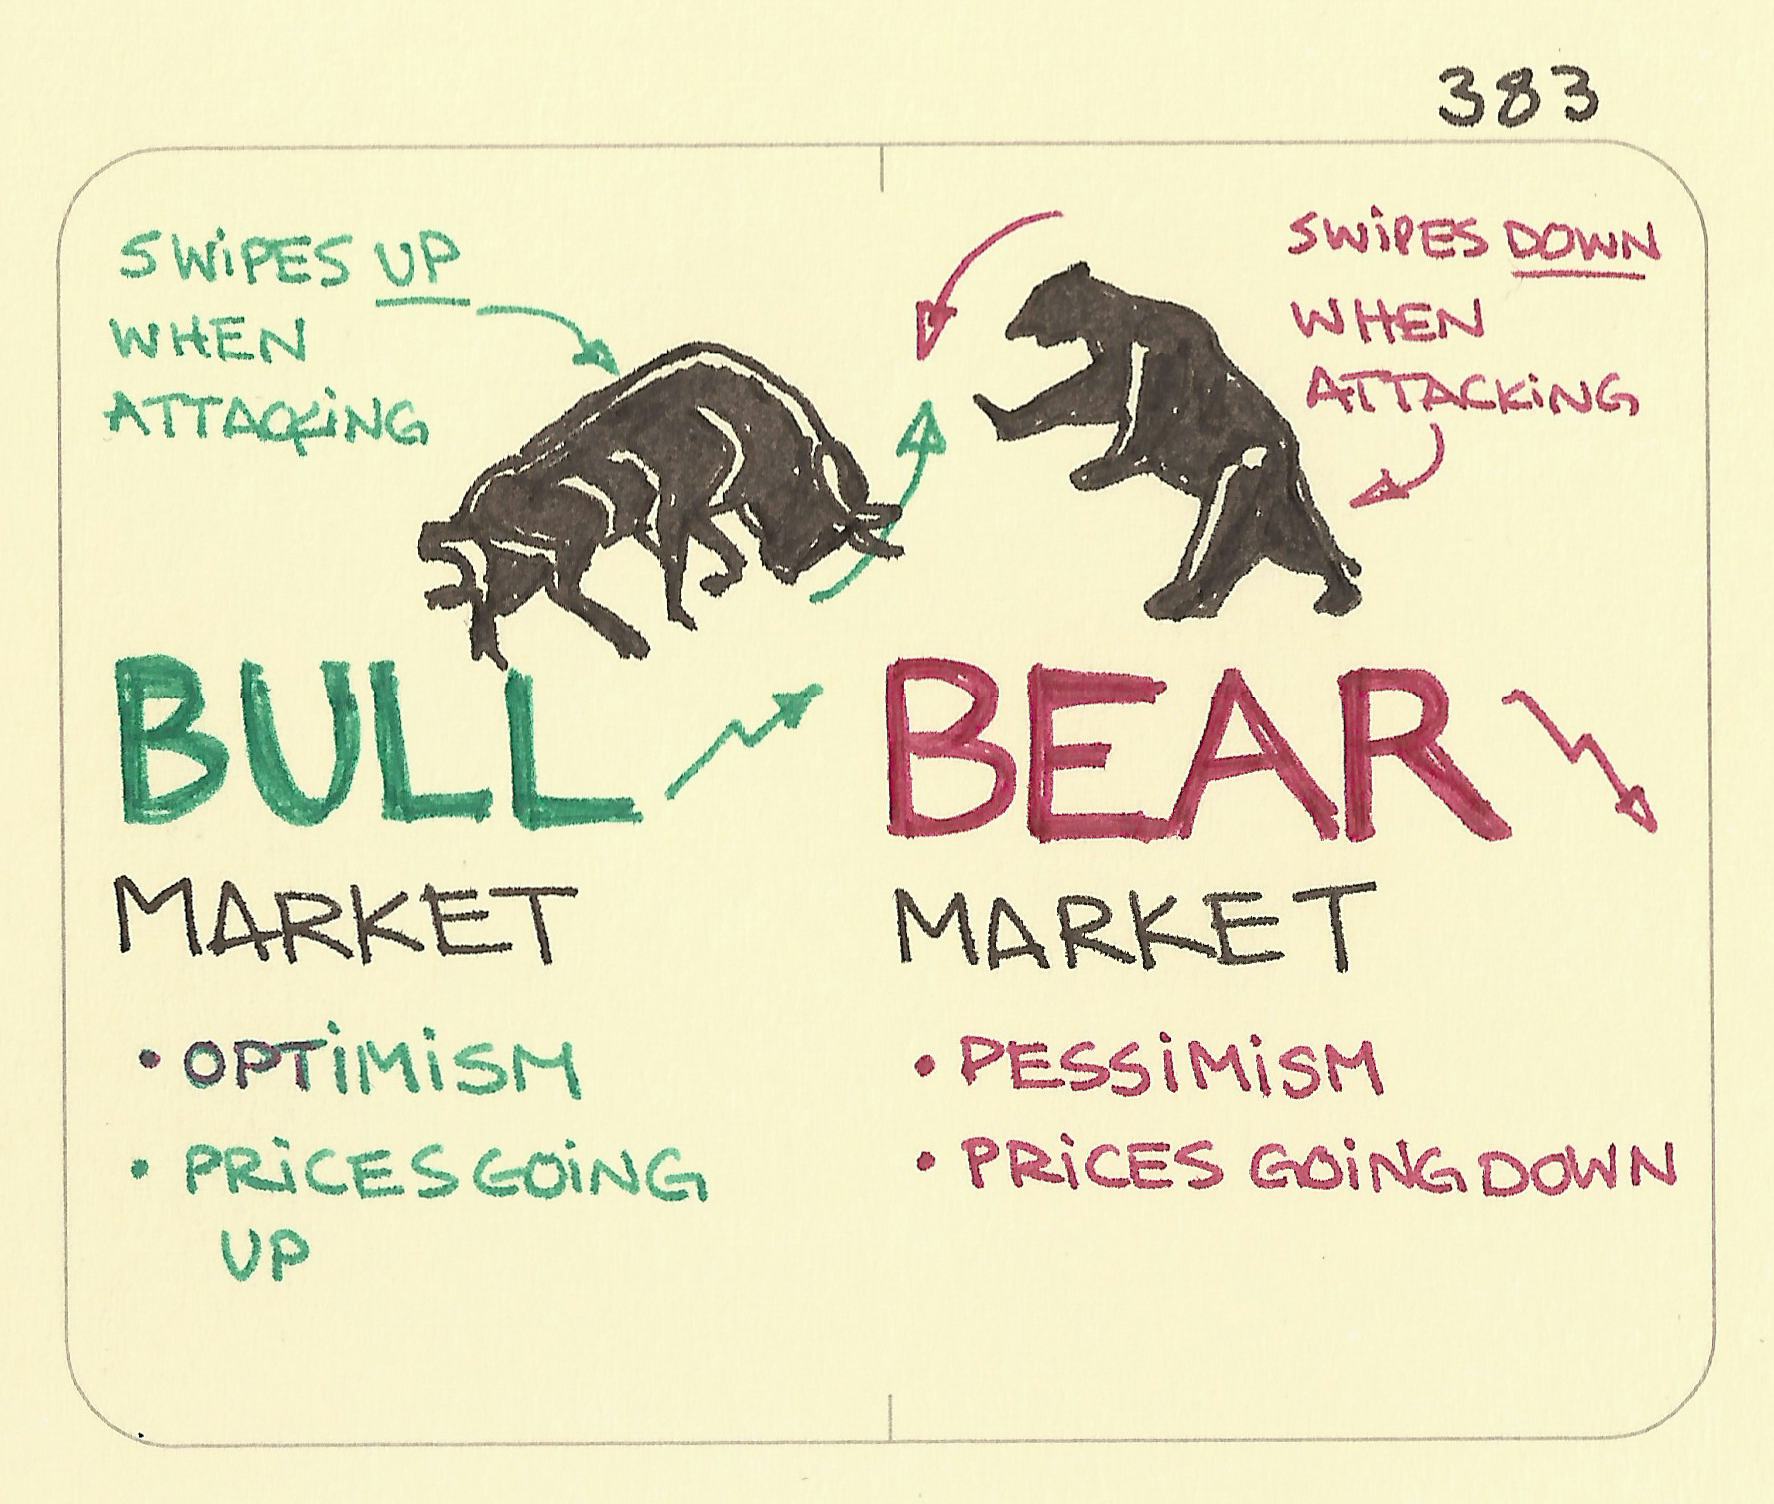 Bull market, bear market - Sketchplanations